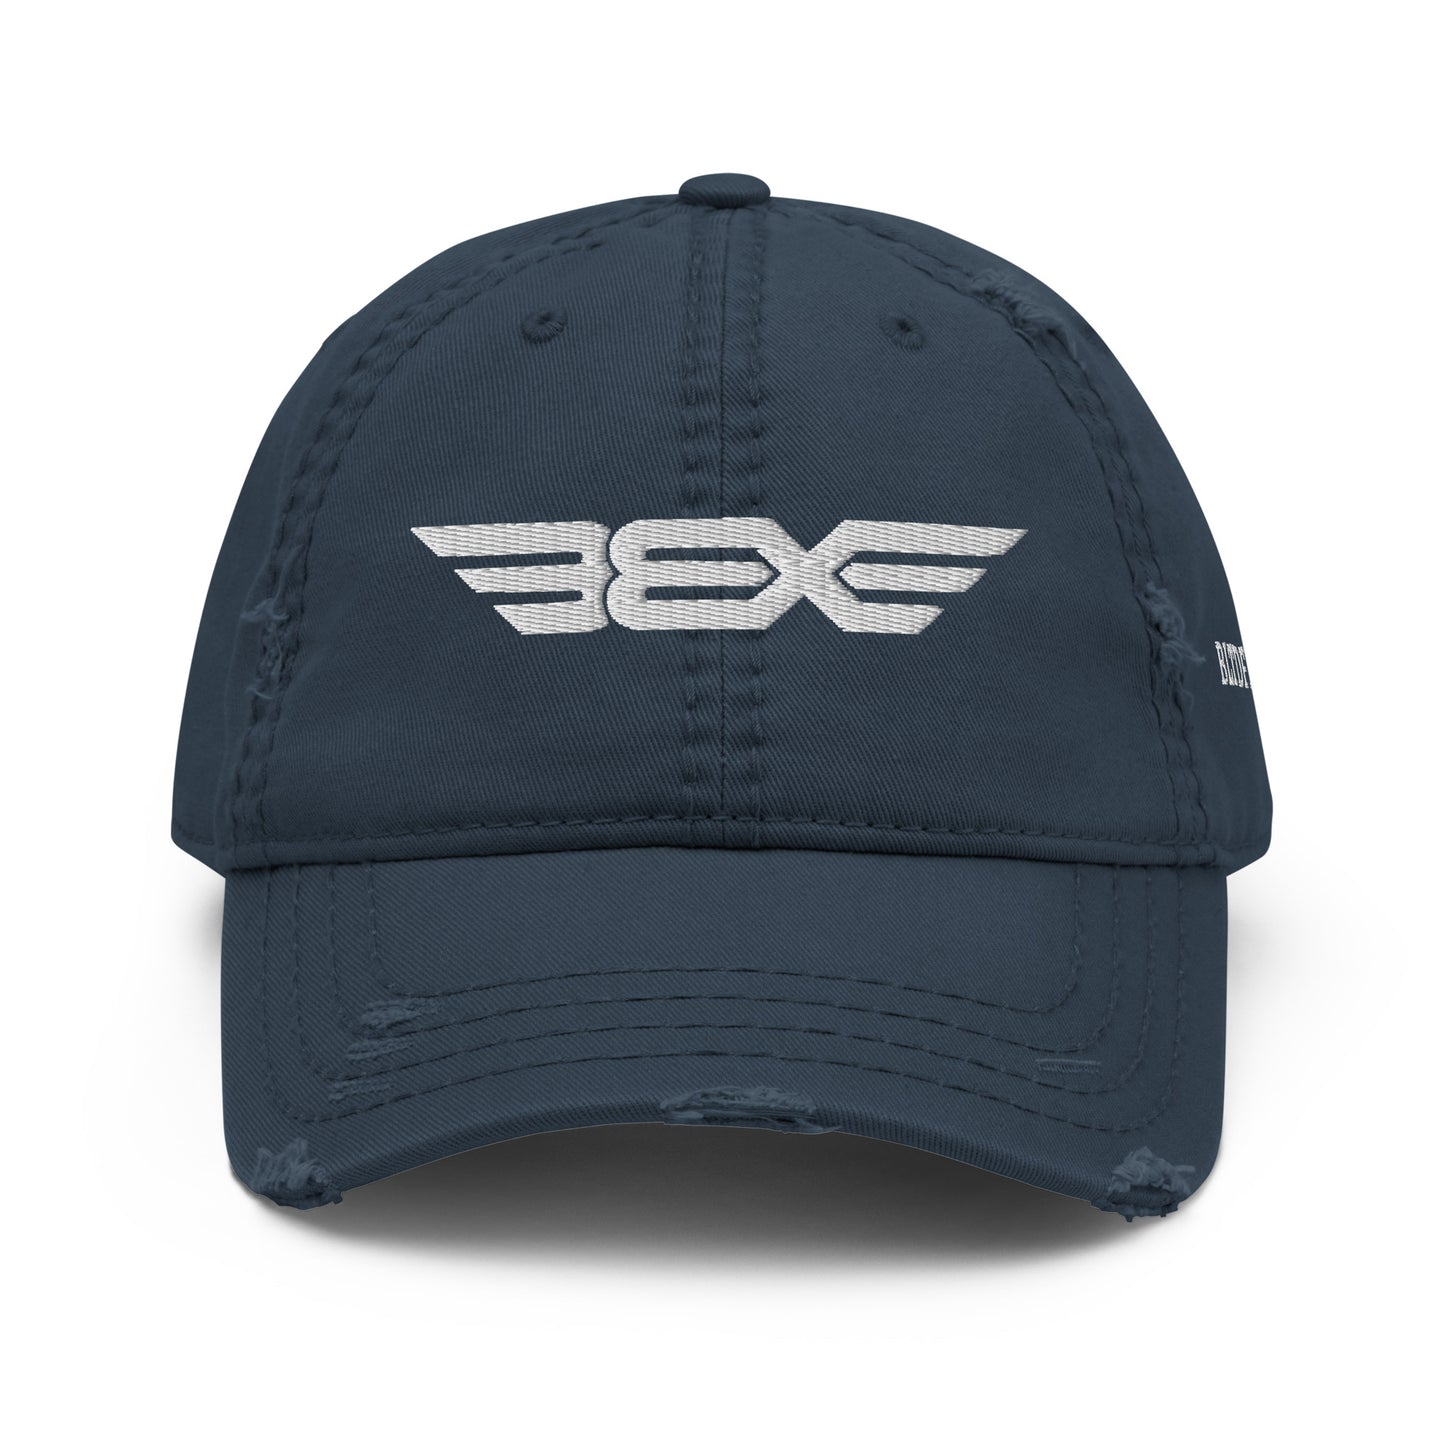 BBX DAD HAT